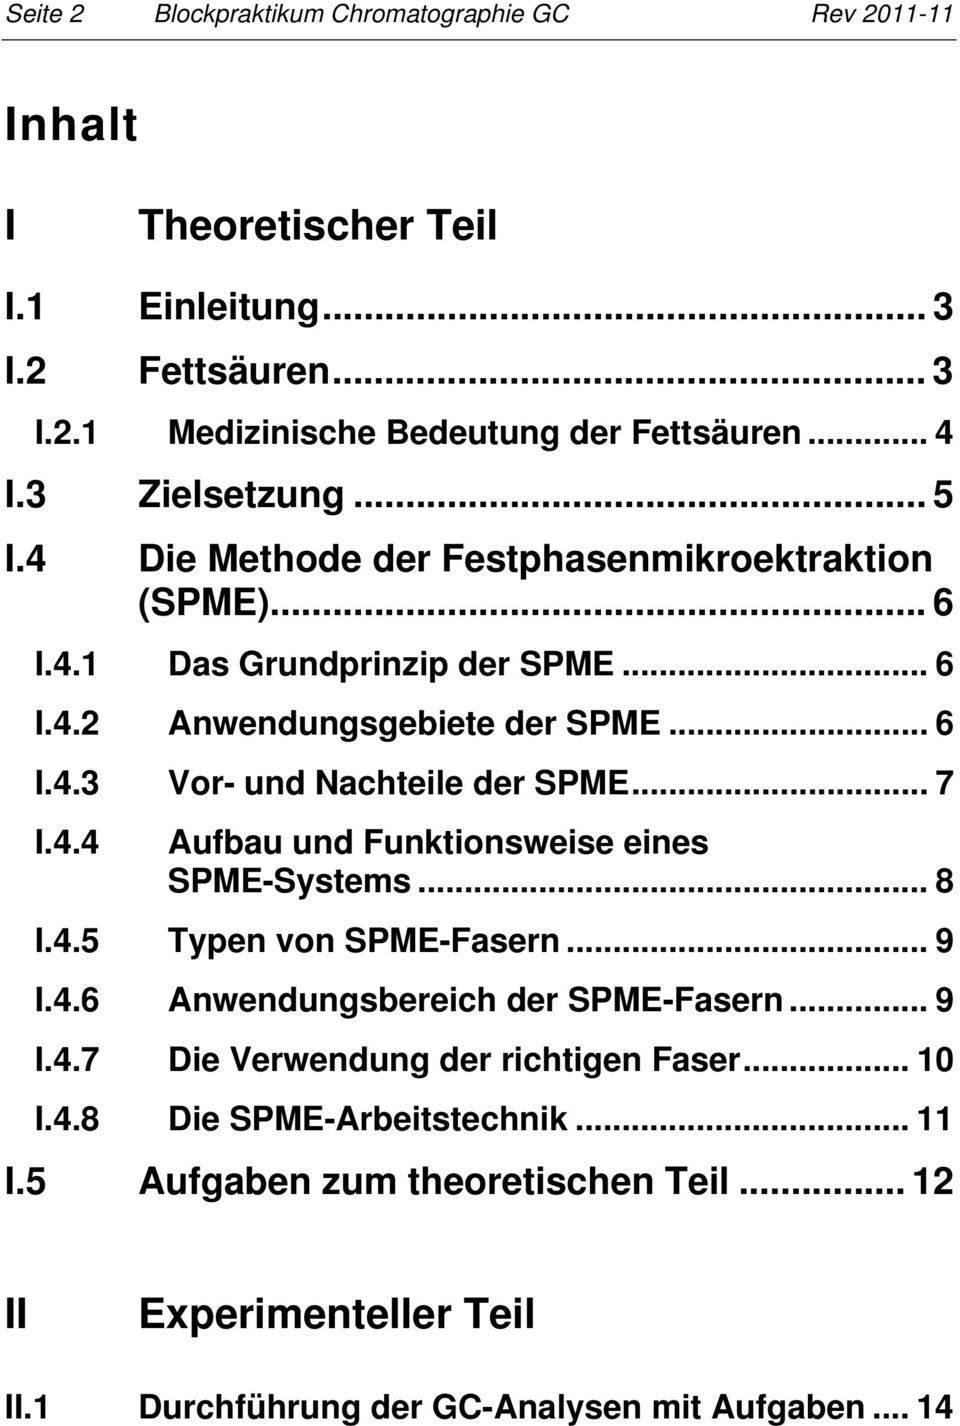 .. 7 I.4.4 Aufbau und Funktionsweise eines SPME-Systems... 8 I.4.5 Typen von SPME-Fasern... 9 I.4.6 Anwendungsbereich der SPME-Fasern... 9 I.4.7 Die Verwendung der richtigen Faser.